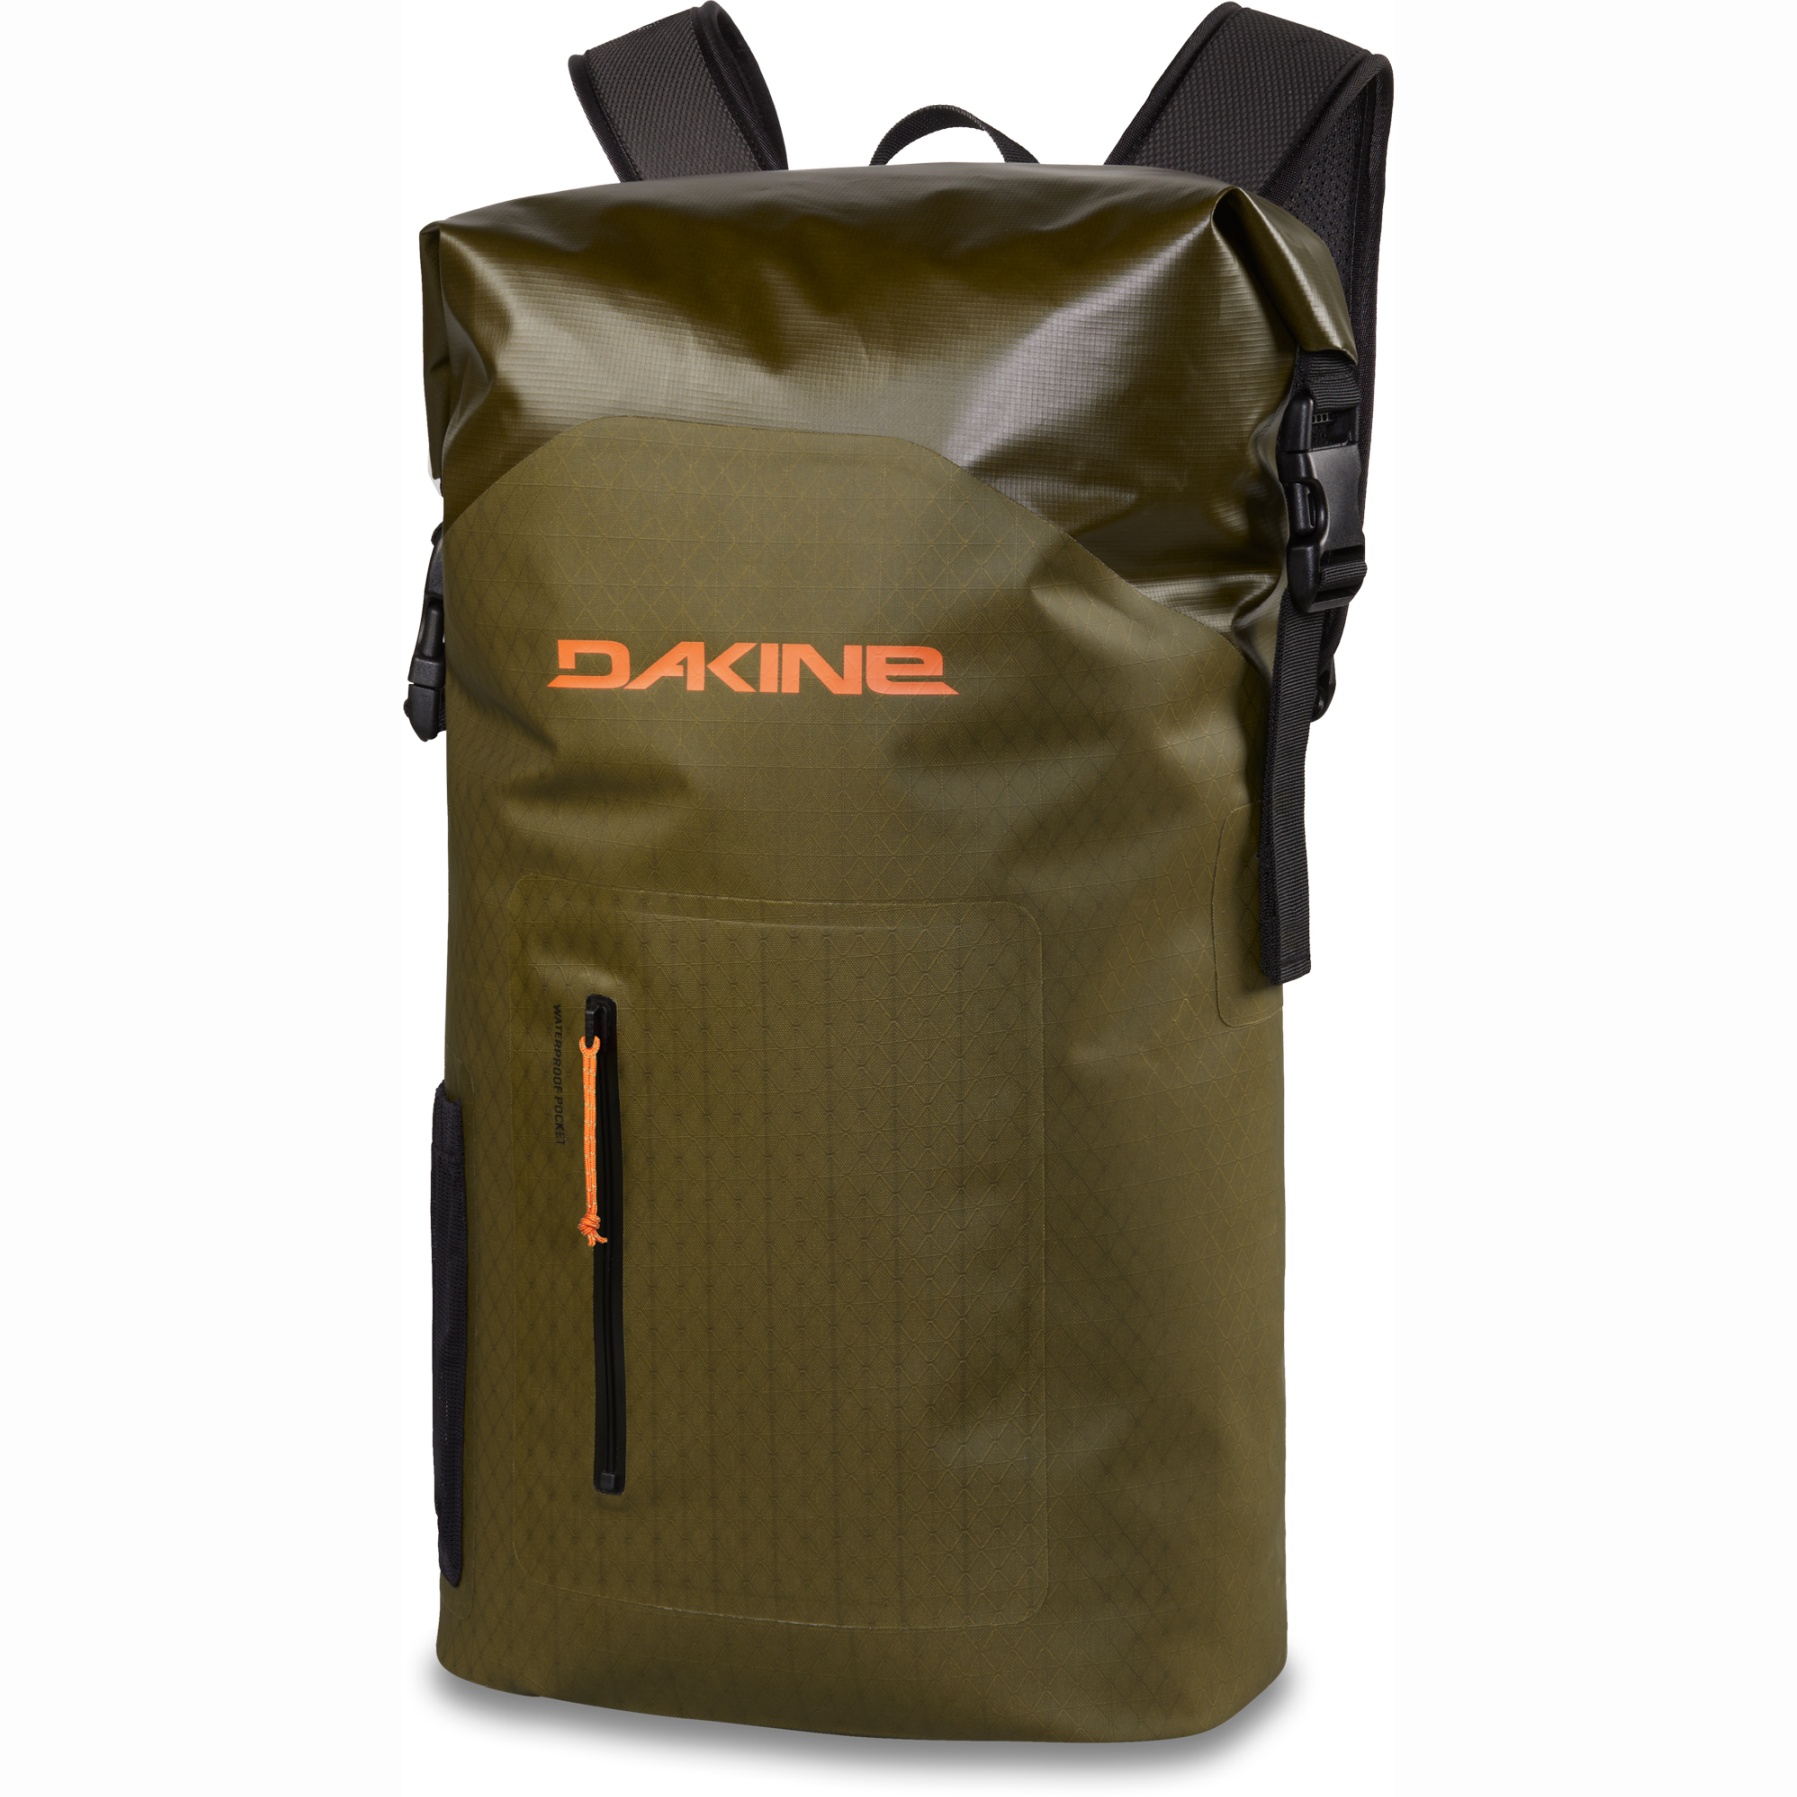 Produktbild von Dakine Cyclone Light Wet/Dry Rolltop Rucksack 30L - dark olive